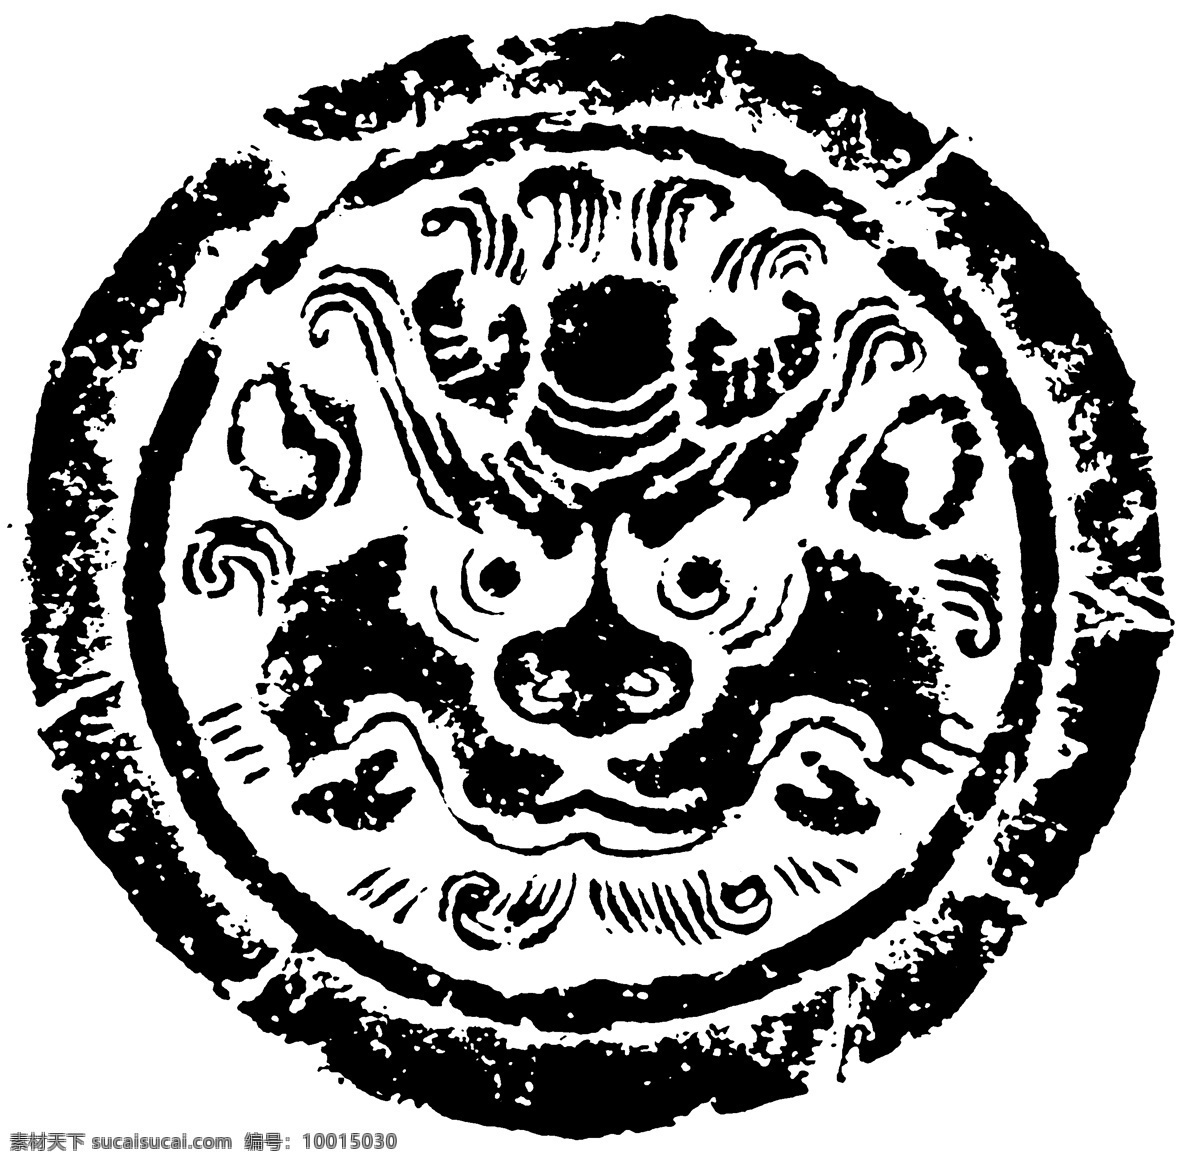 瓦当图案 秦汉时期图案 中国传统图案 图案116 图案 设计素材 瓦当纹饰 装饰图案 书画美术 白色